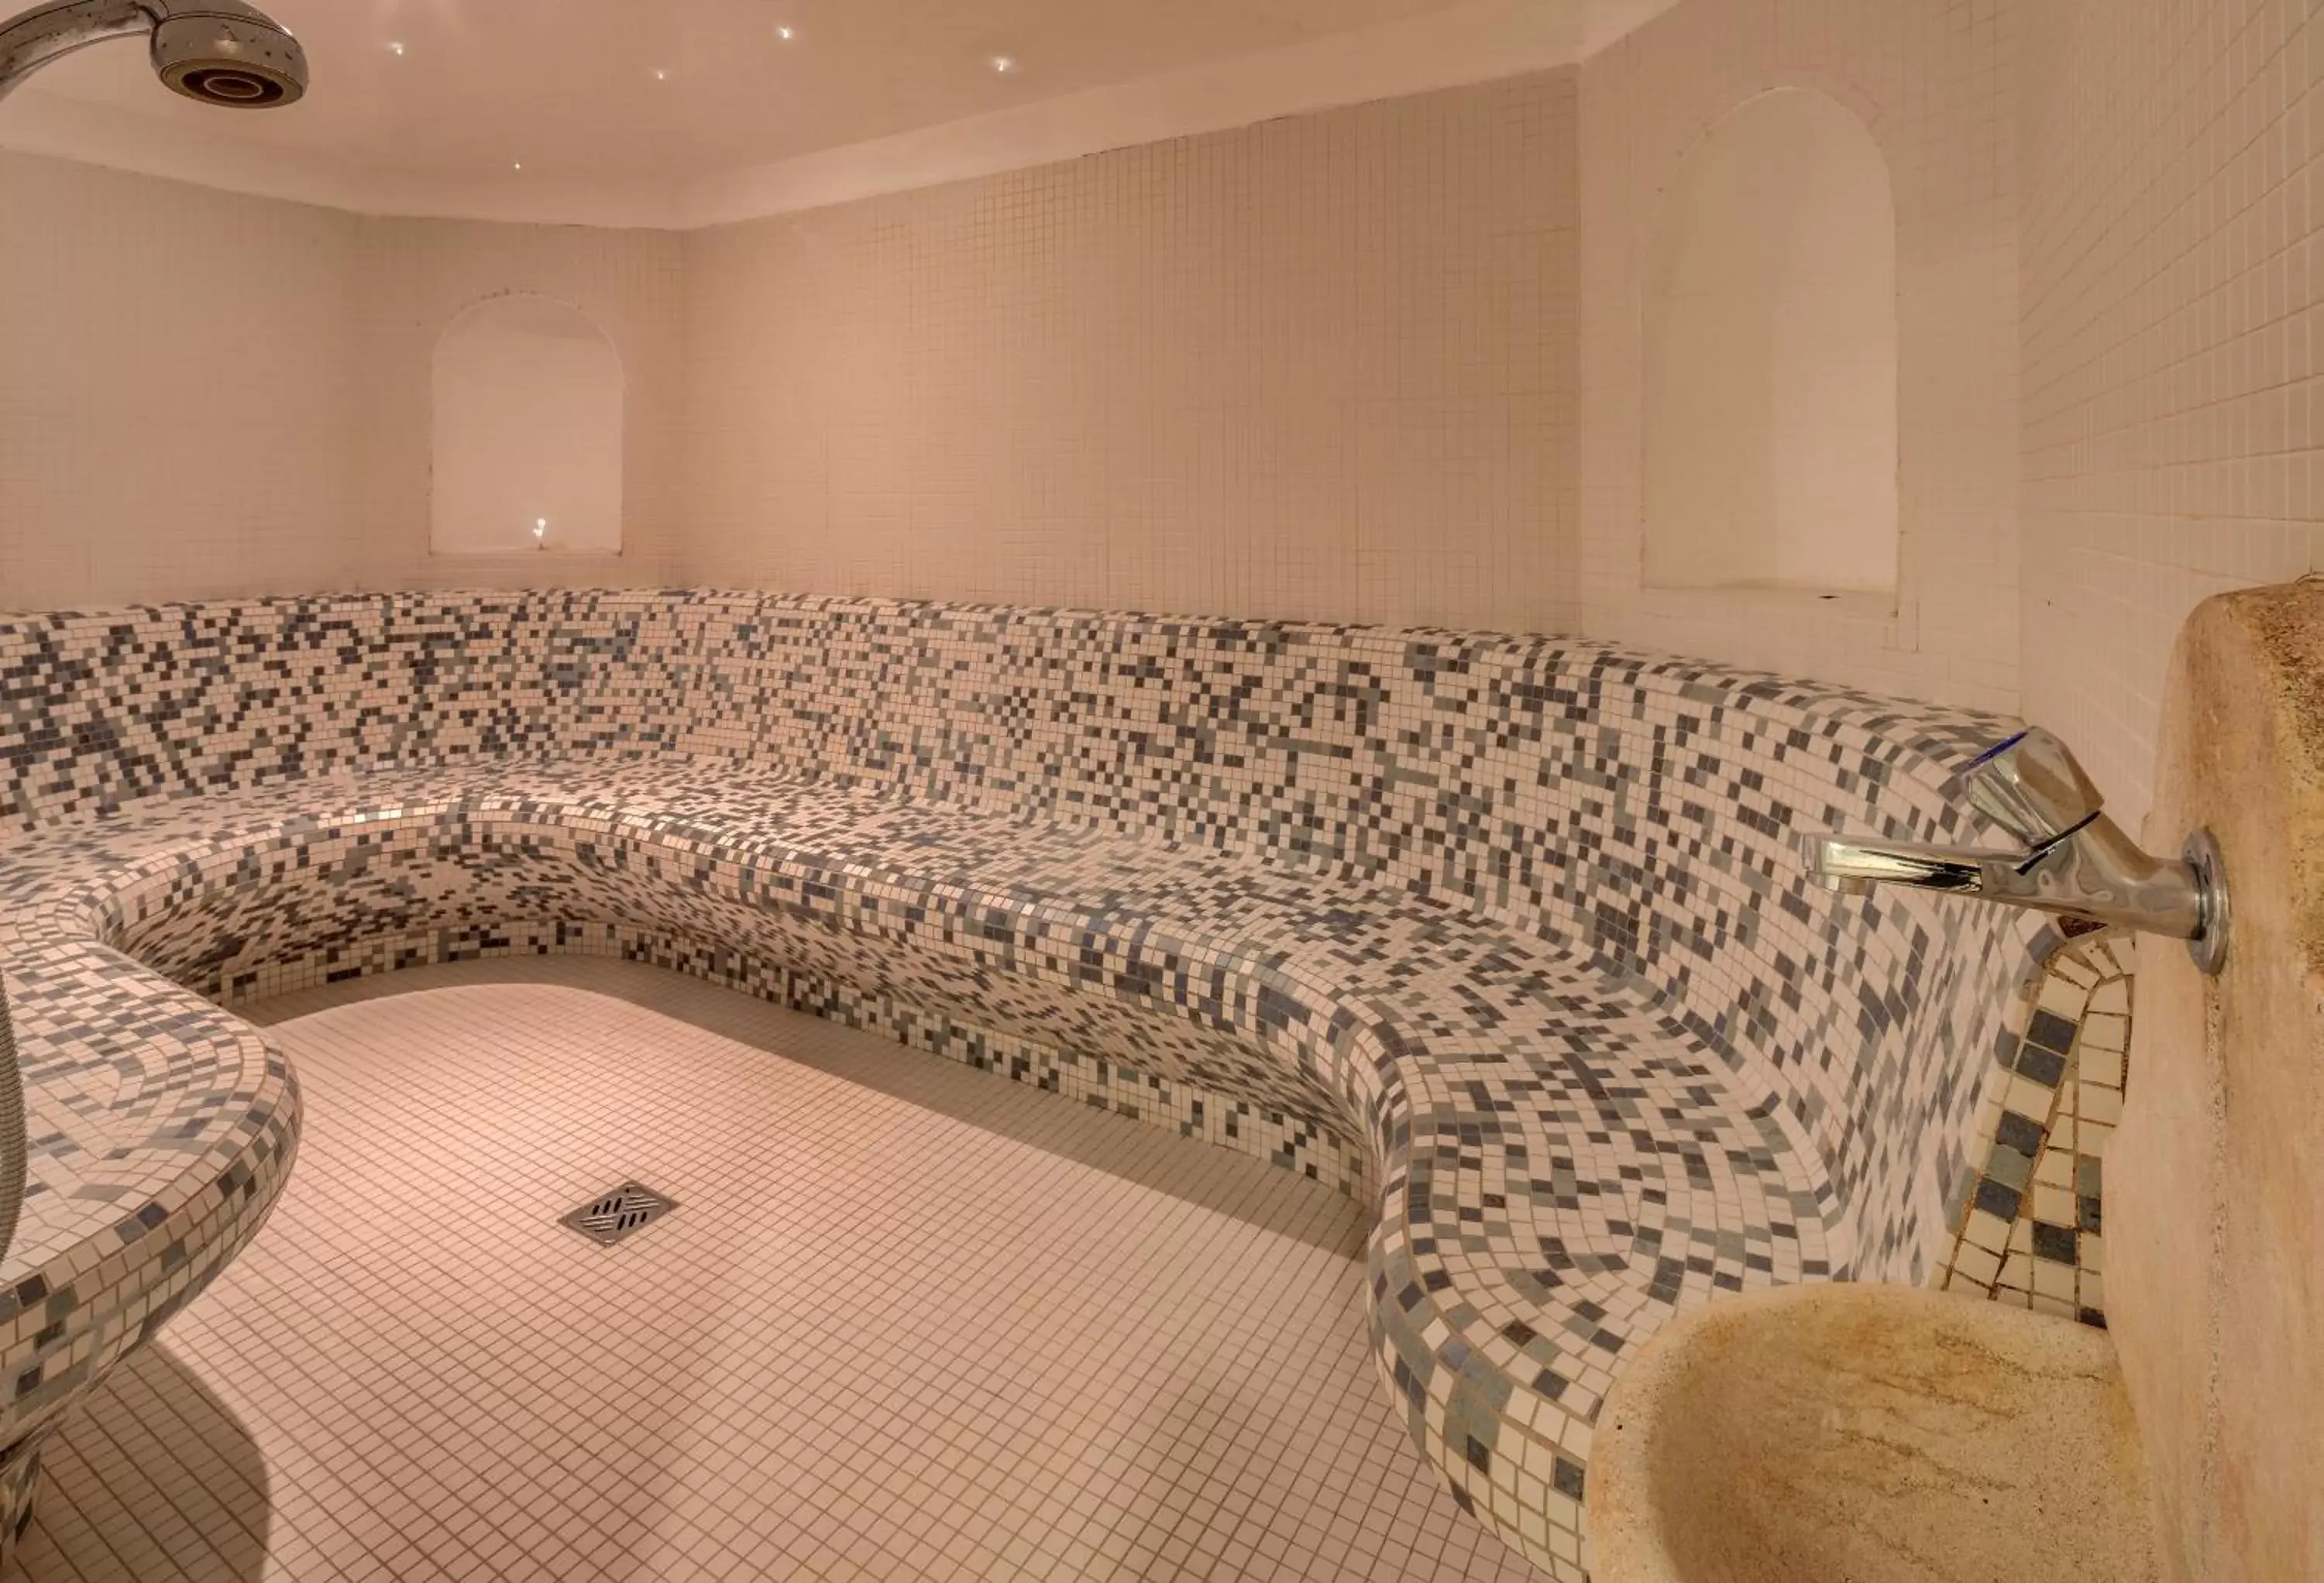 Steam room, Bathroom in Best Western Hotel Adige